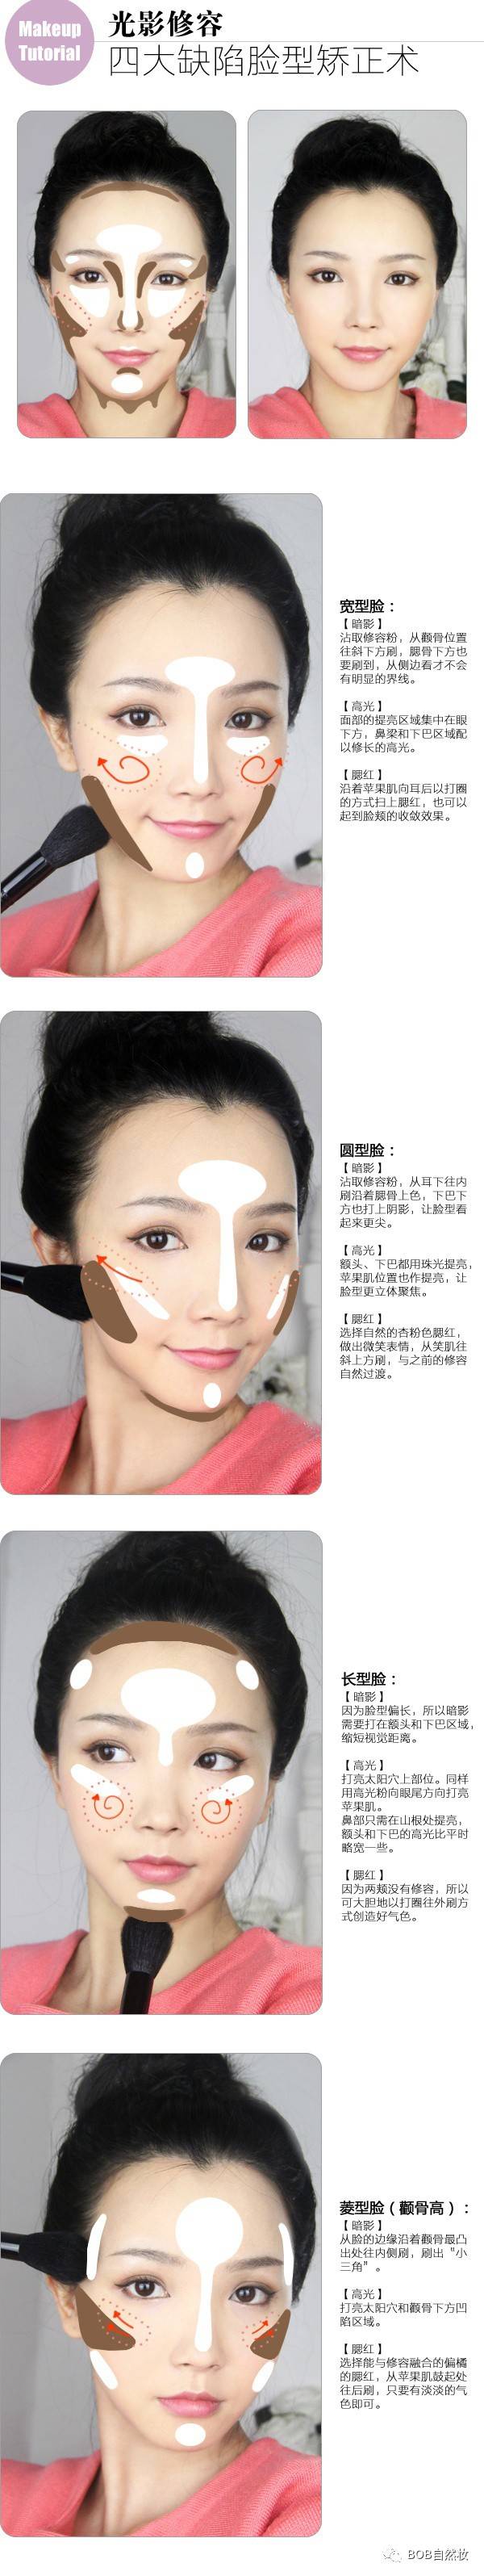 修容是为面部打造立体感或者调整面部缺陷的一种化妆手法,用高光和